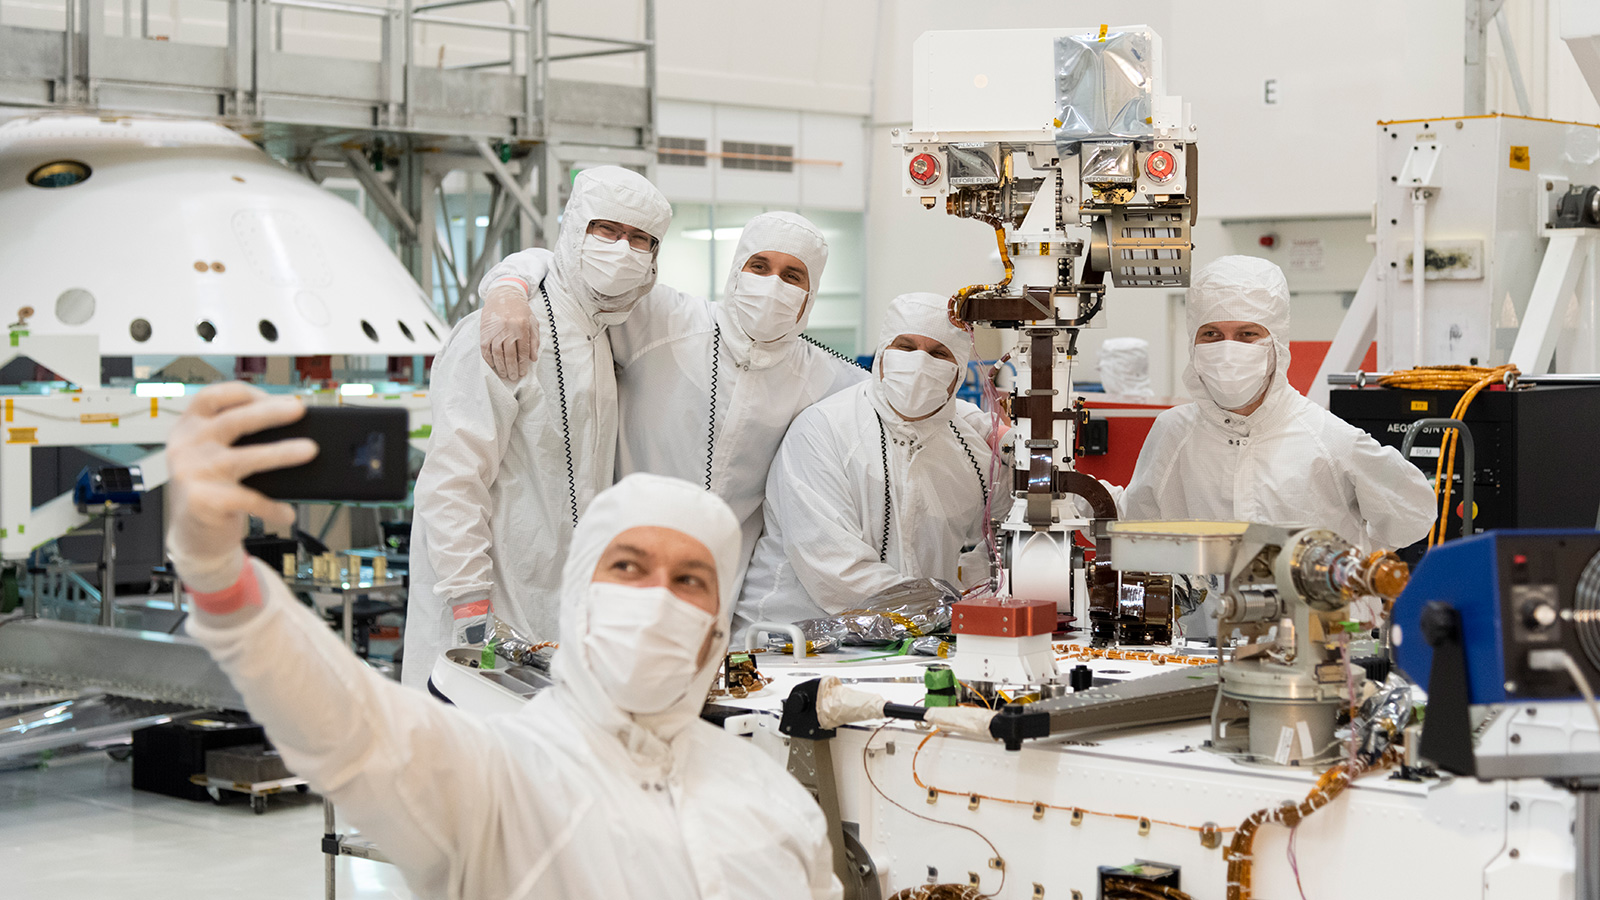 Mars Rover Engineer Built Career From NASA/JPL Internship Meet JPL